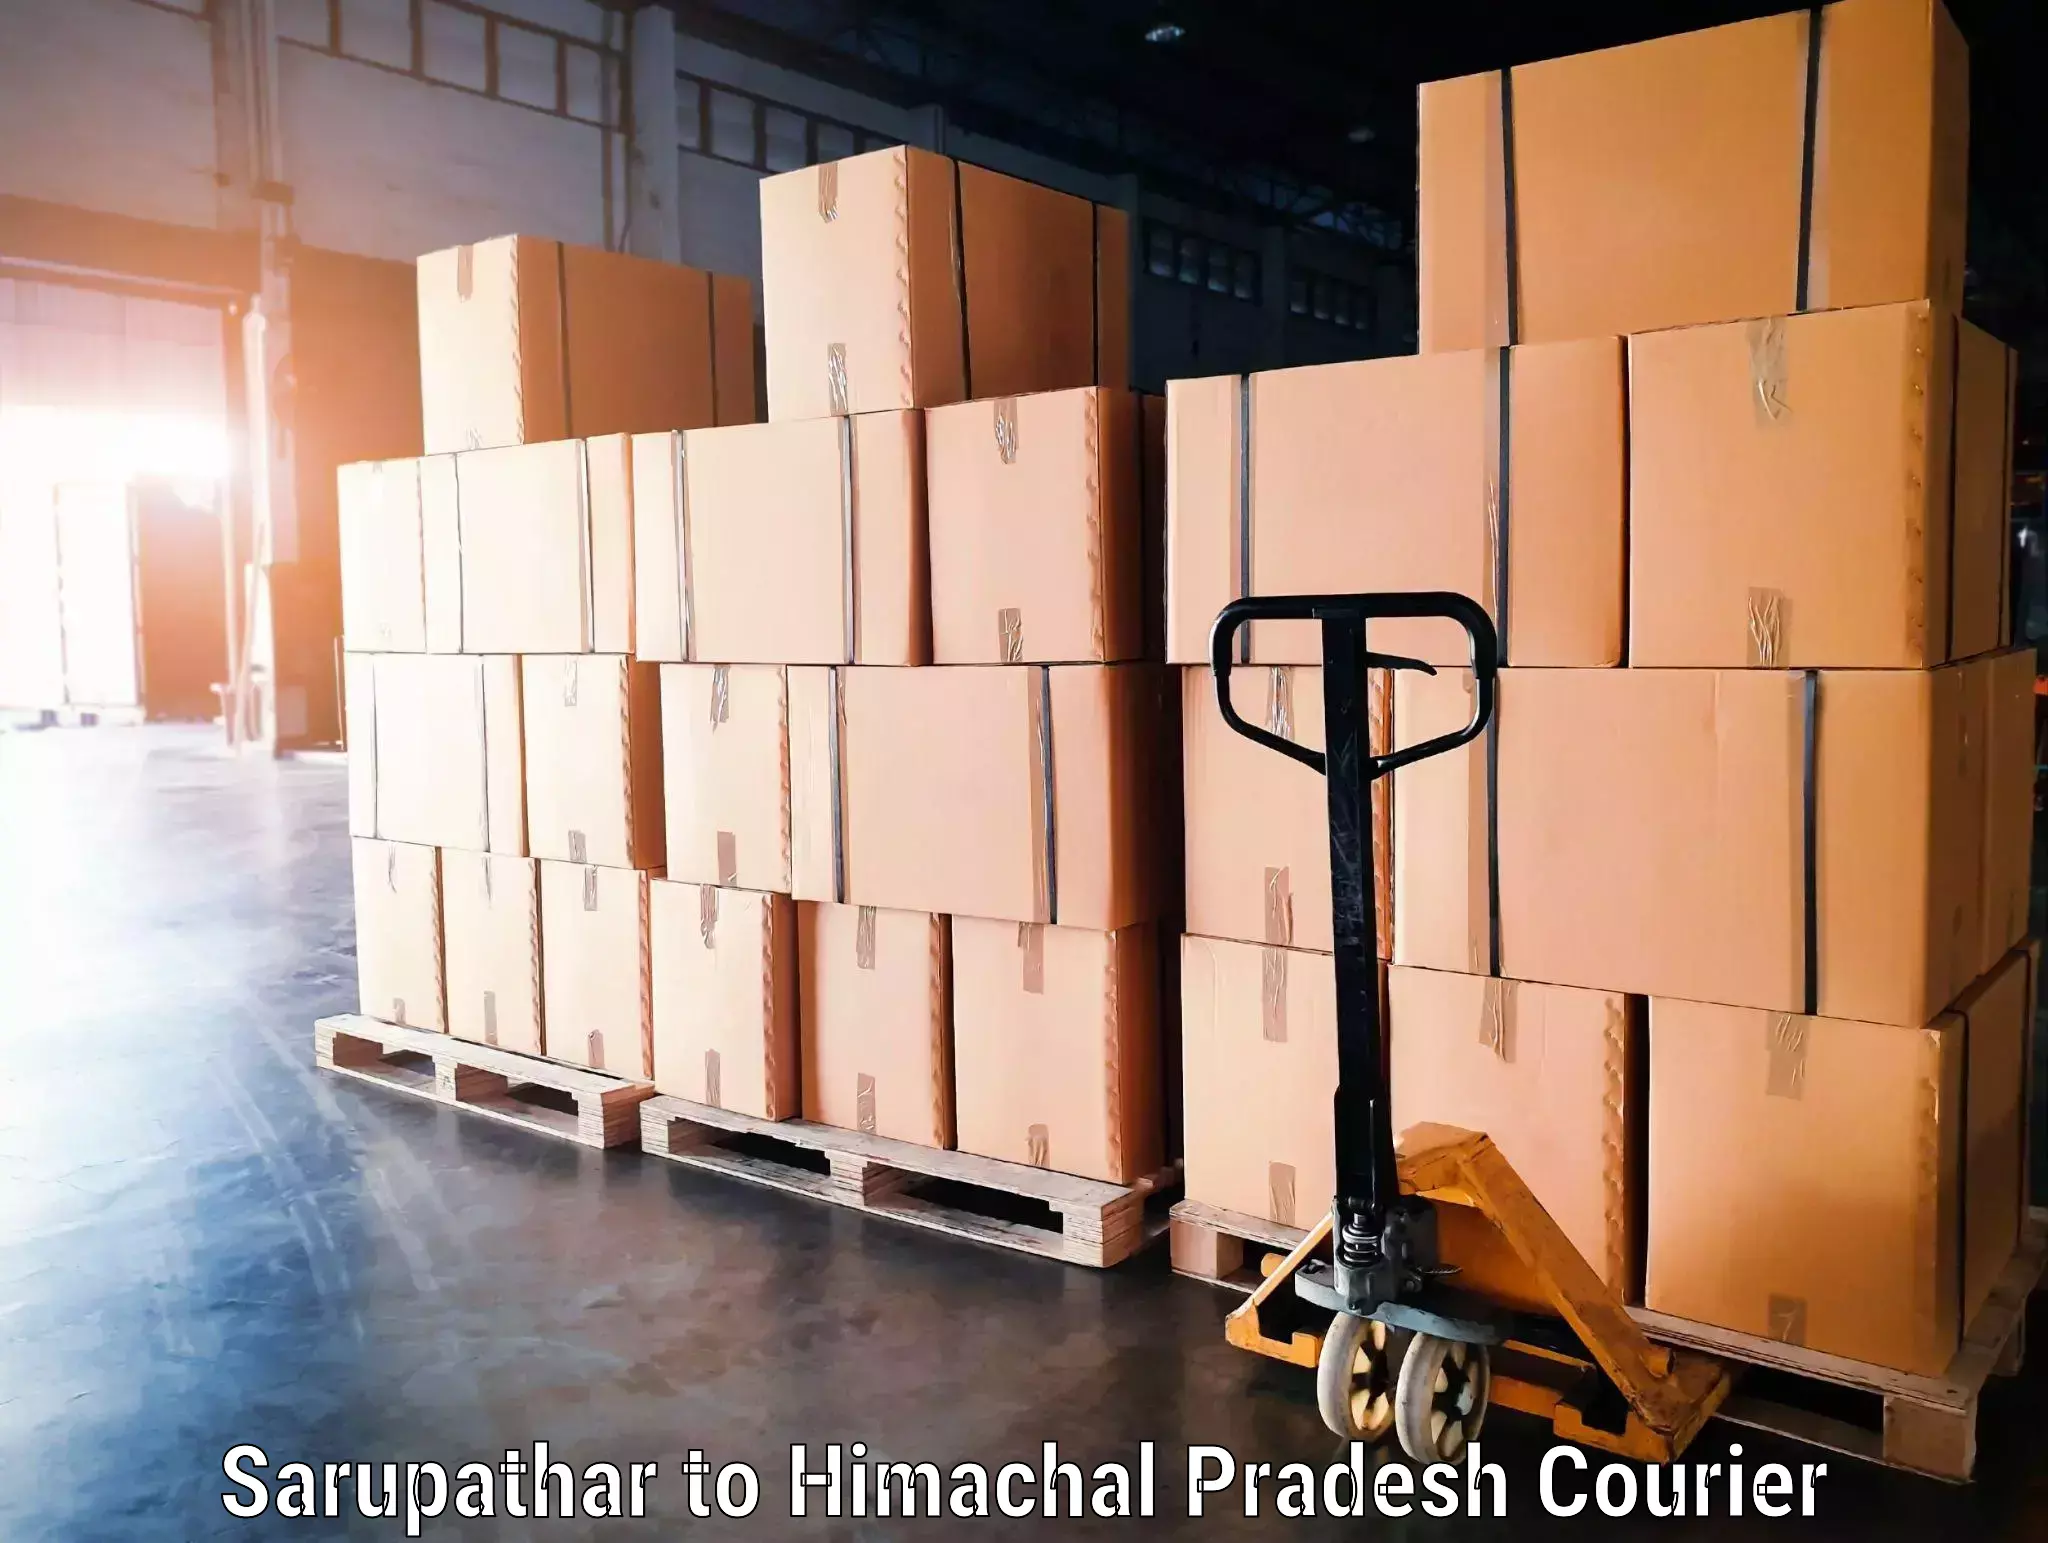 Luggage delivery network Sarupathar to Joginder Nagar